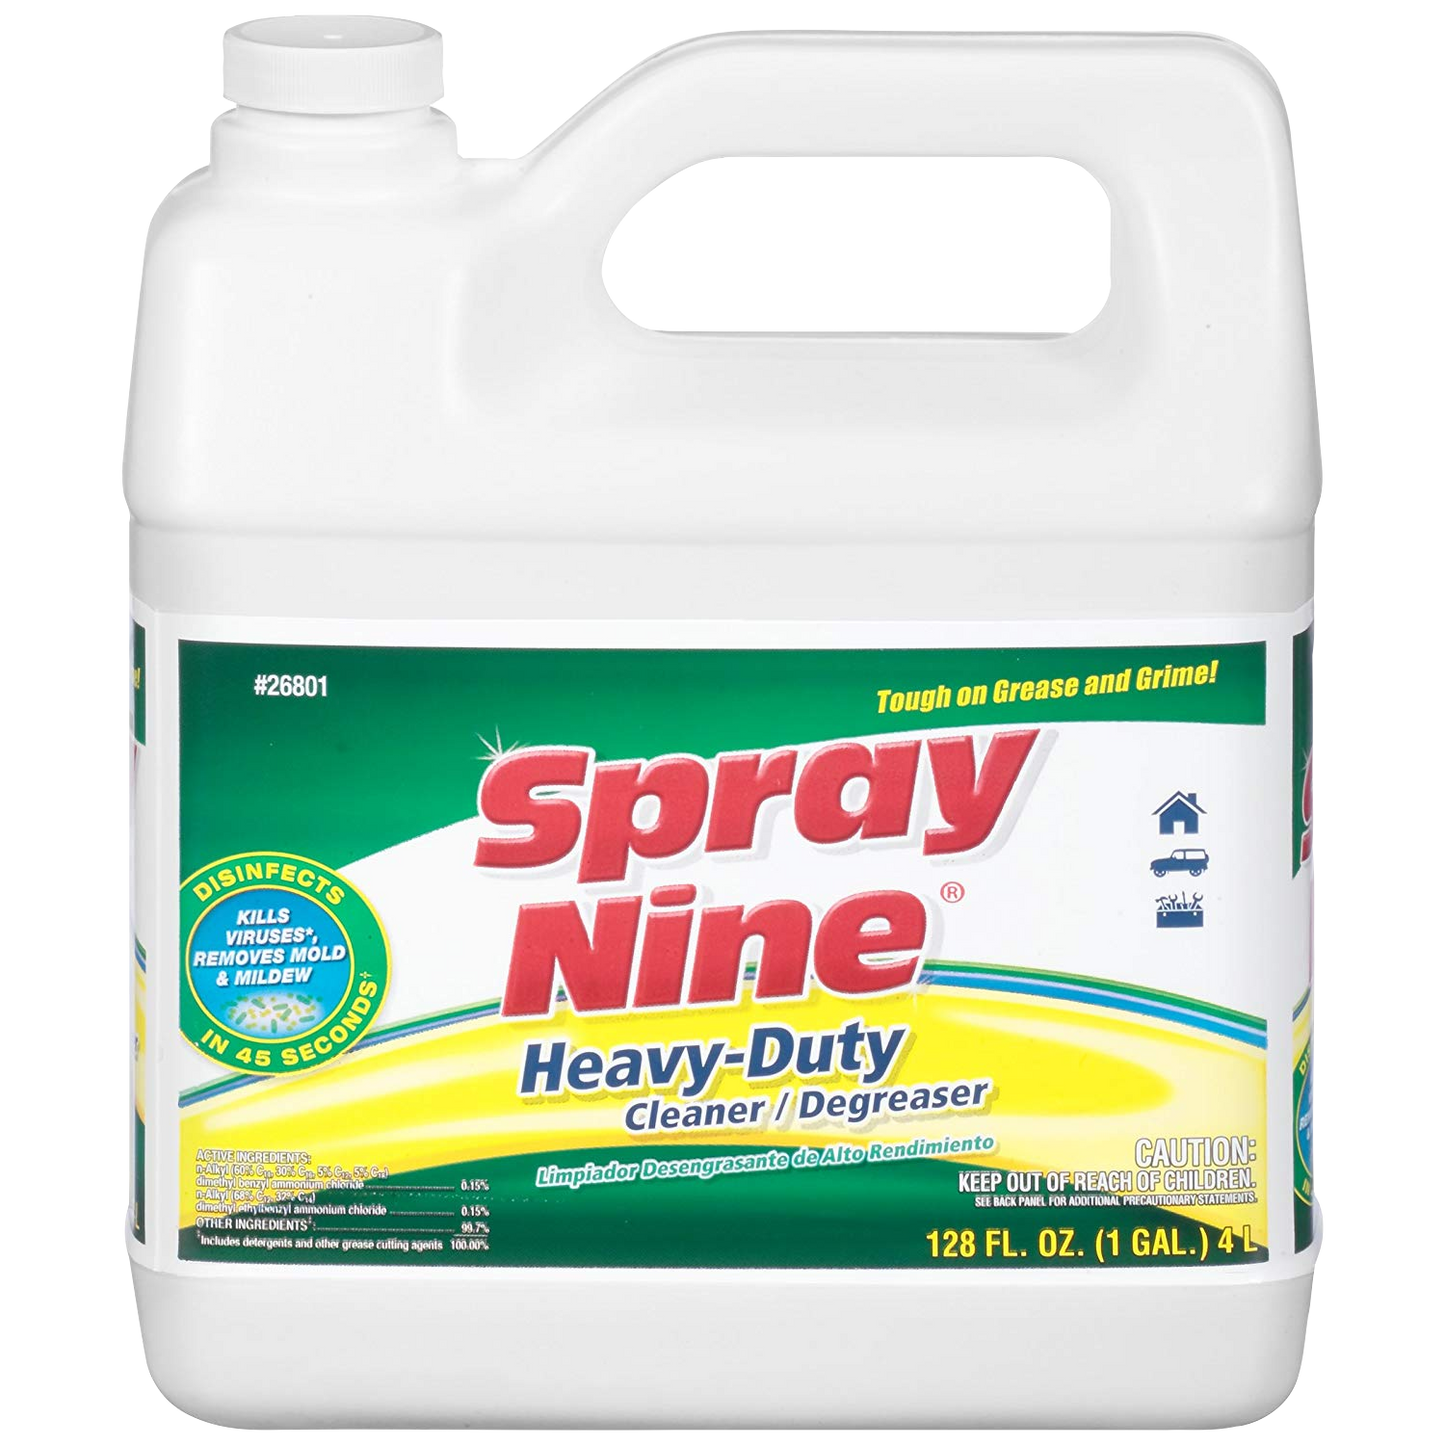 Spray nine Heavy-Duty Cleaner / Degreaser